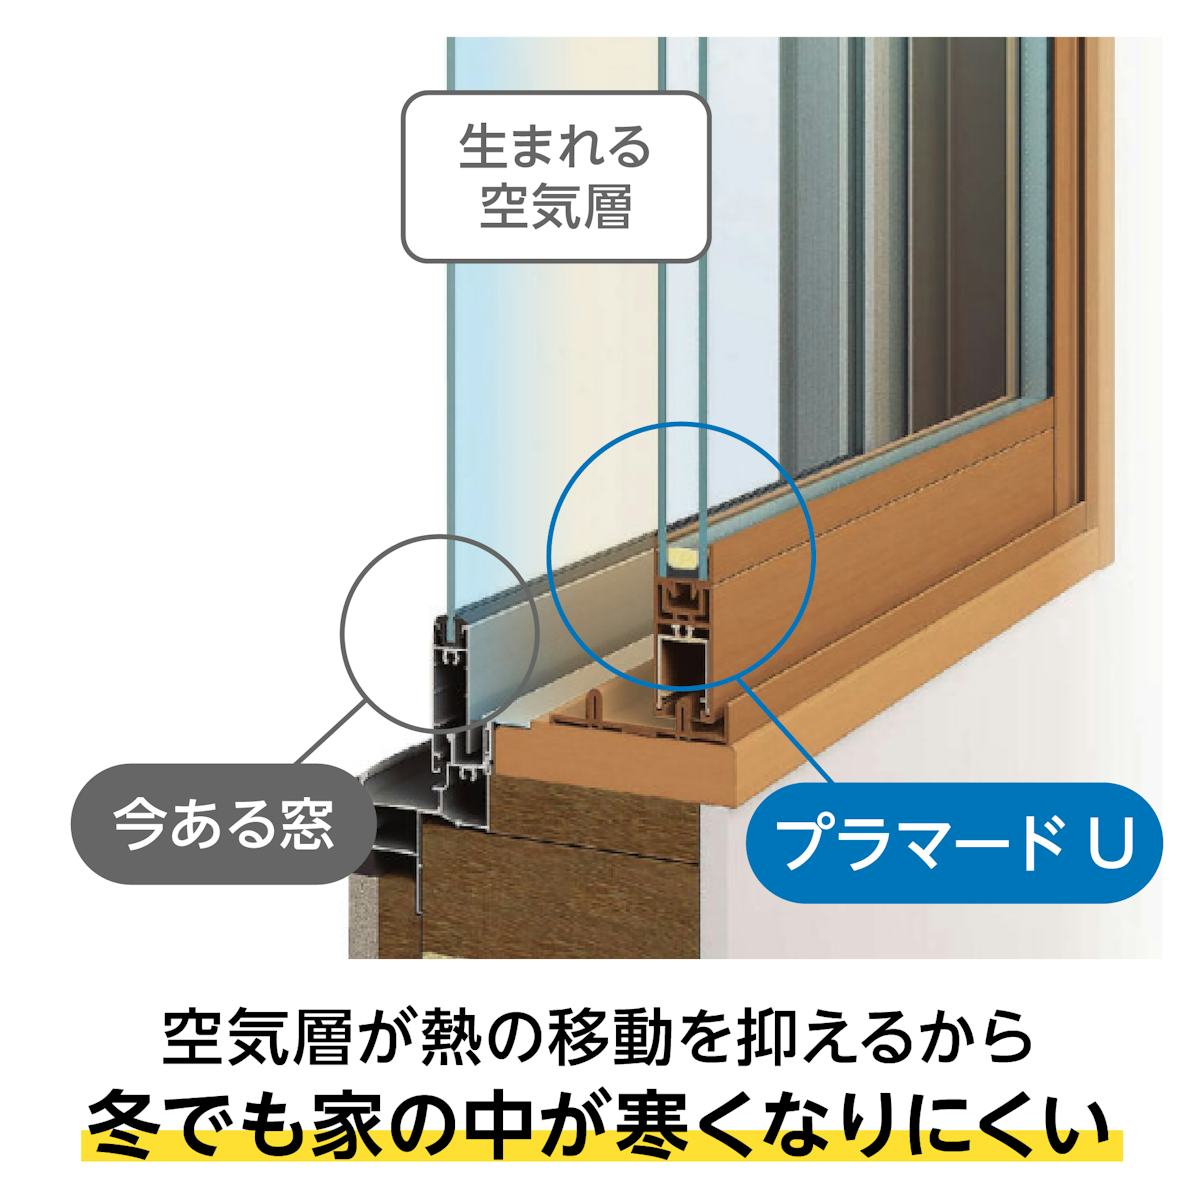 YKK APの内窓「マドリモ プラマードU」引き違い窓(2枚建て) - 熱の移動を抑える空気層をつくる